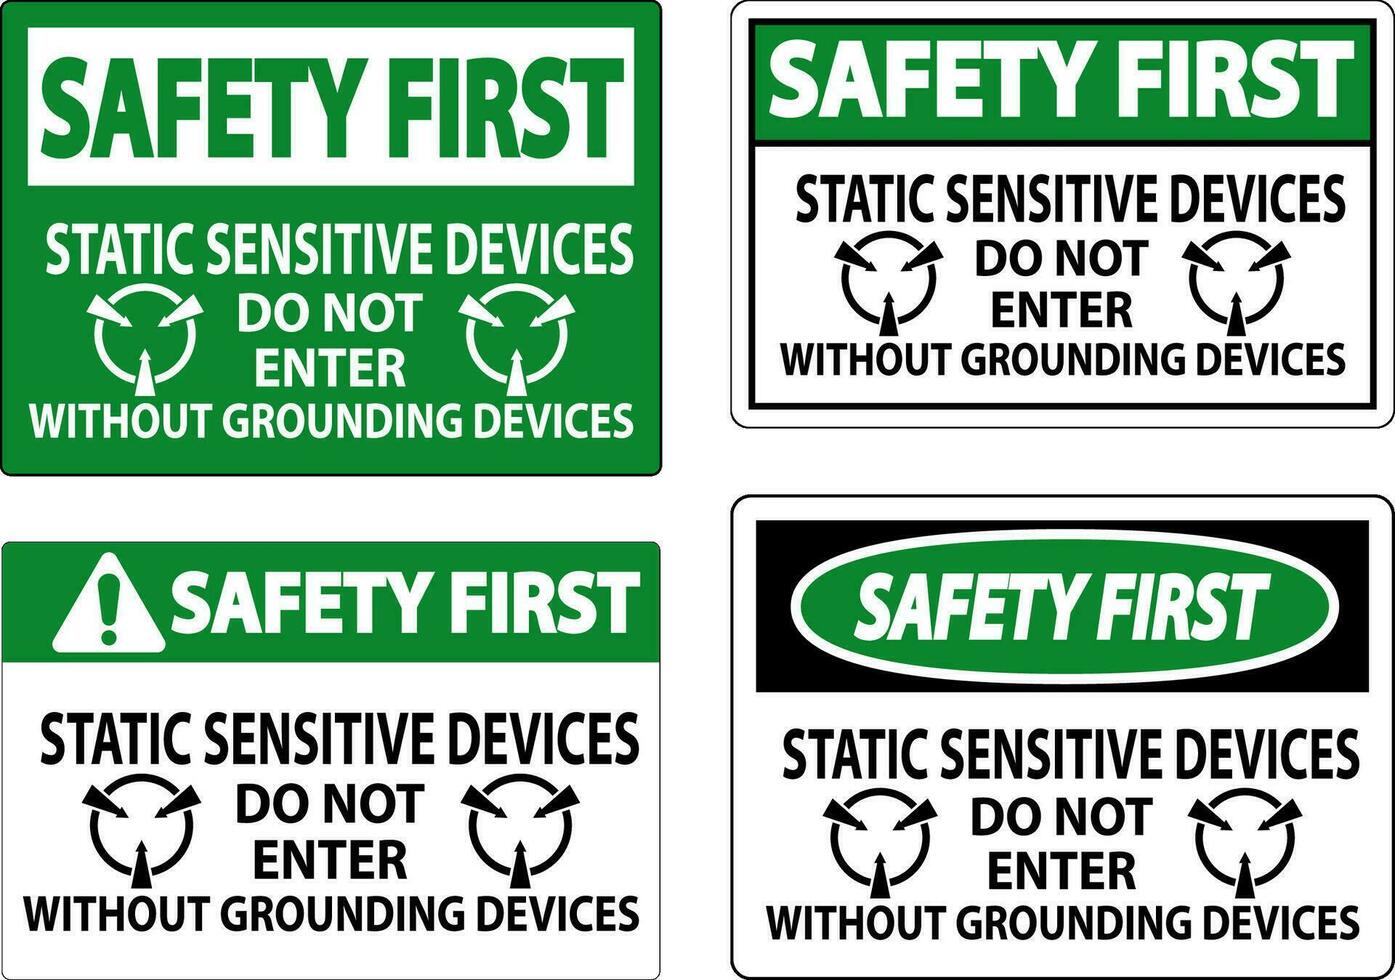 sécurité premier signe statique sensible dispositifs faire ne pas entrer sans pour autant mise à la terre dispositifs vecteur